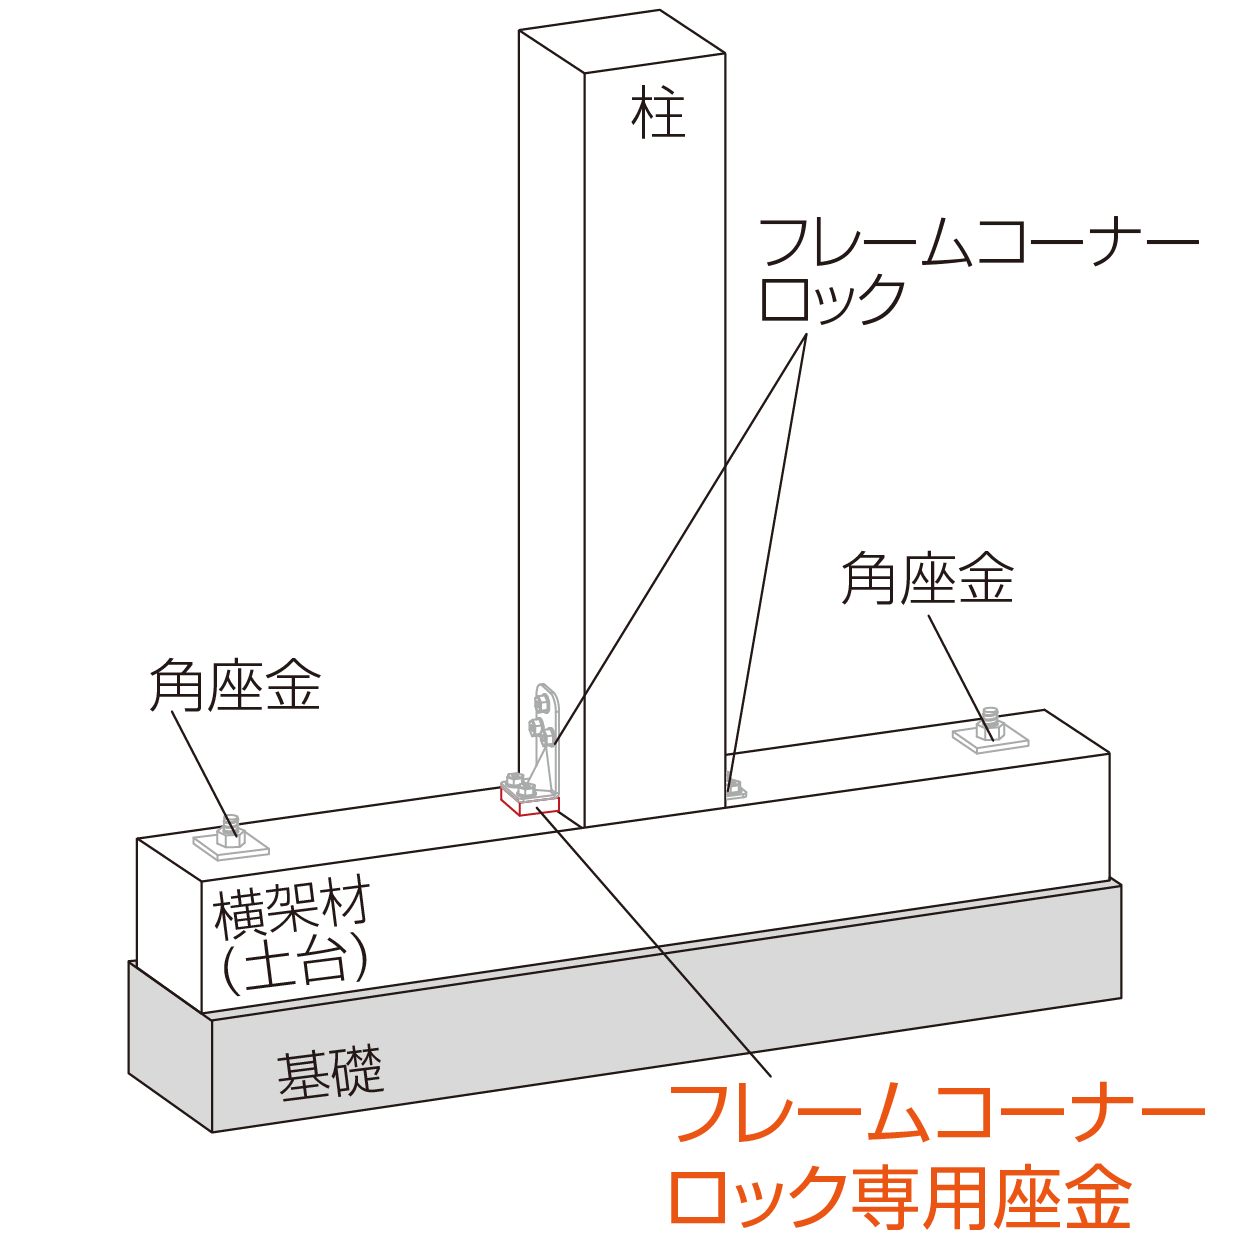 フレームコーナーロック専用座金 柱脚使用例（中柱）